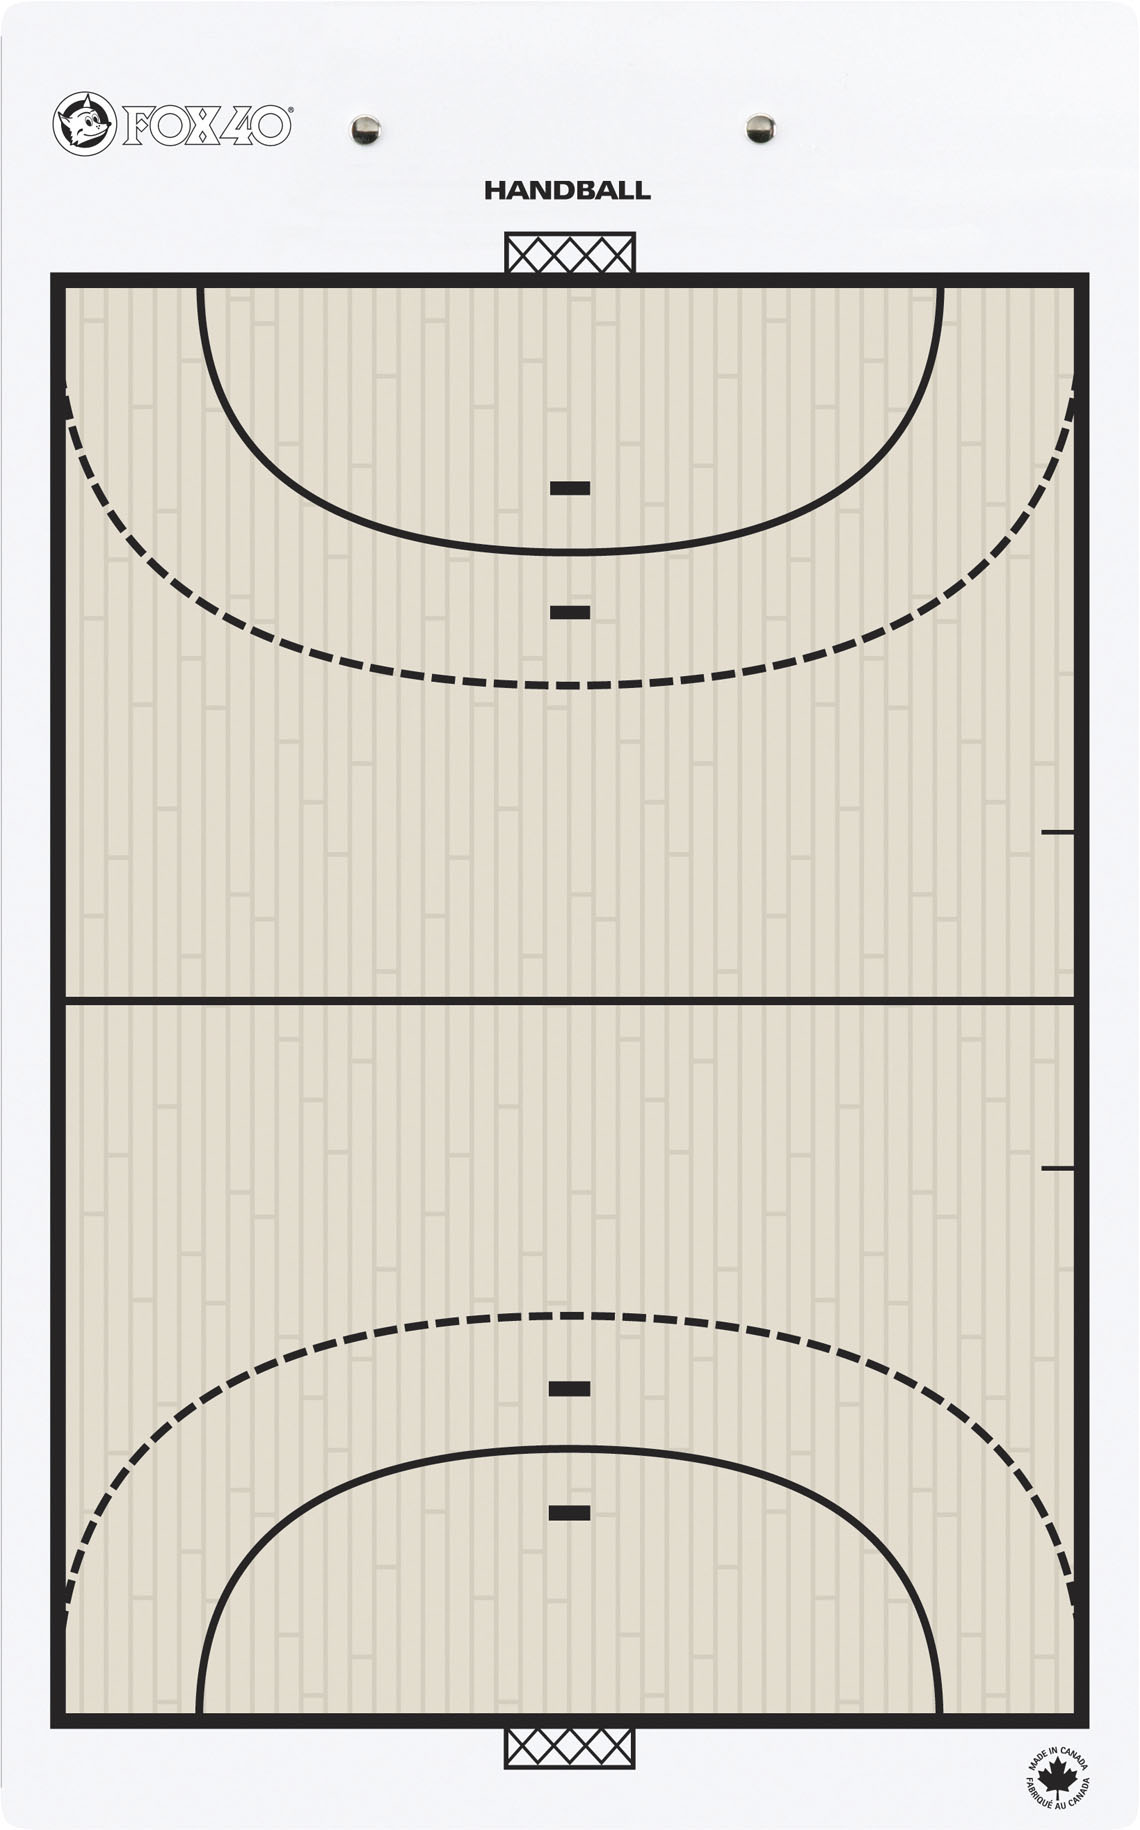 Ταμπλό Προπονητή Handball FOX40 25,5×40,5